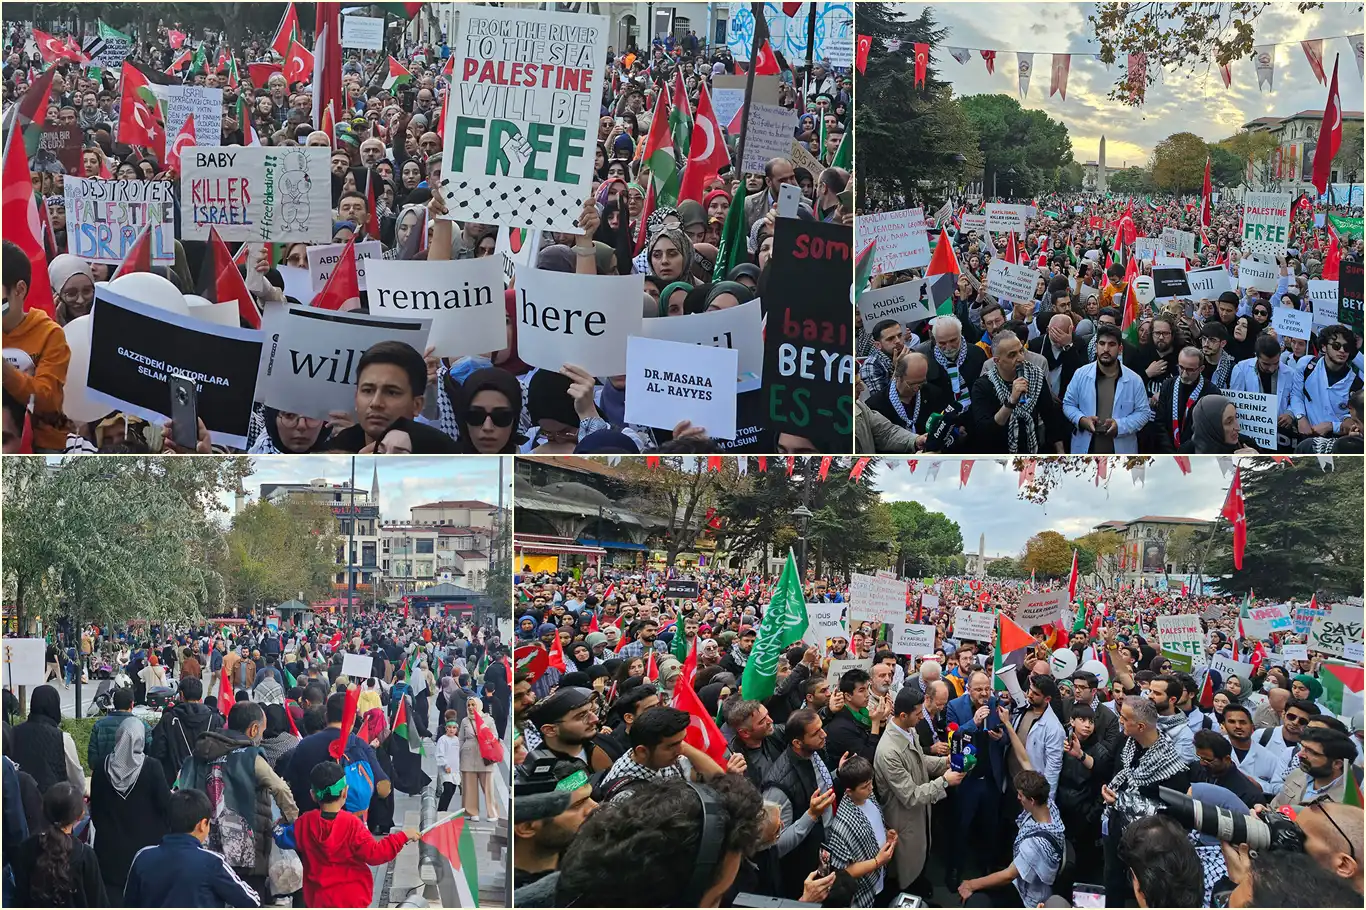 İstanbul'da onbinler "El Ele Gazze Şeridi" oluşturdu